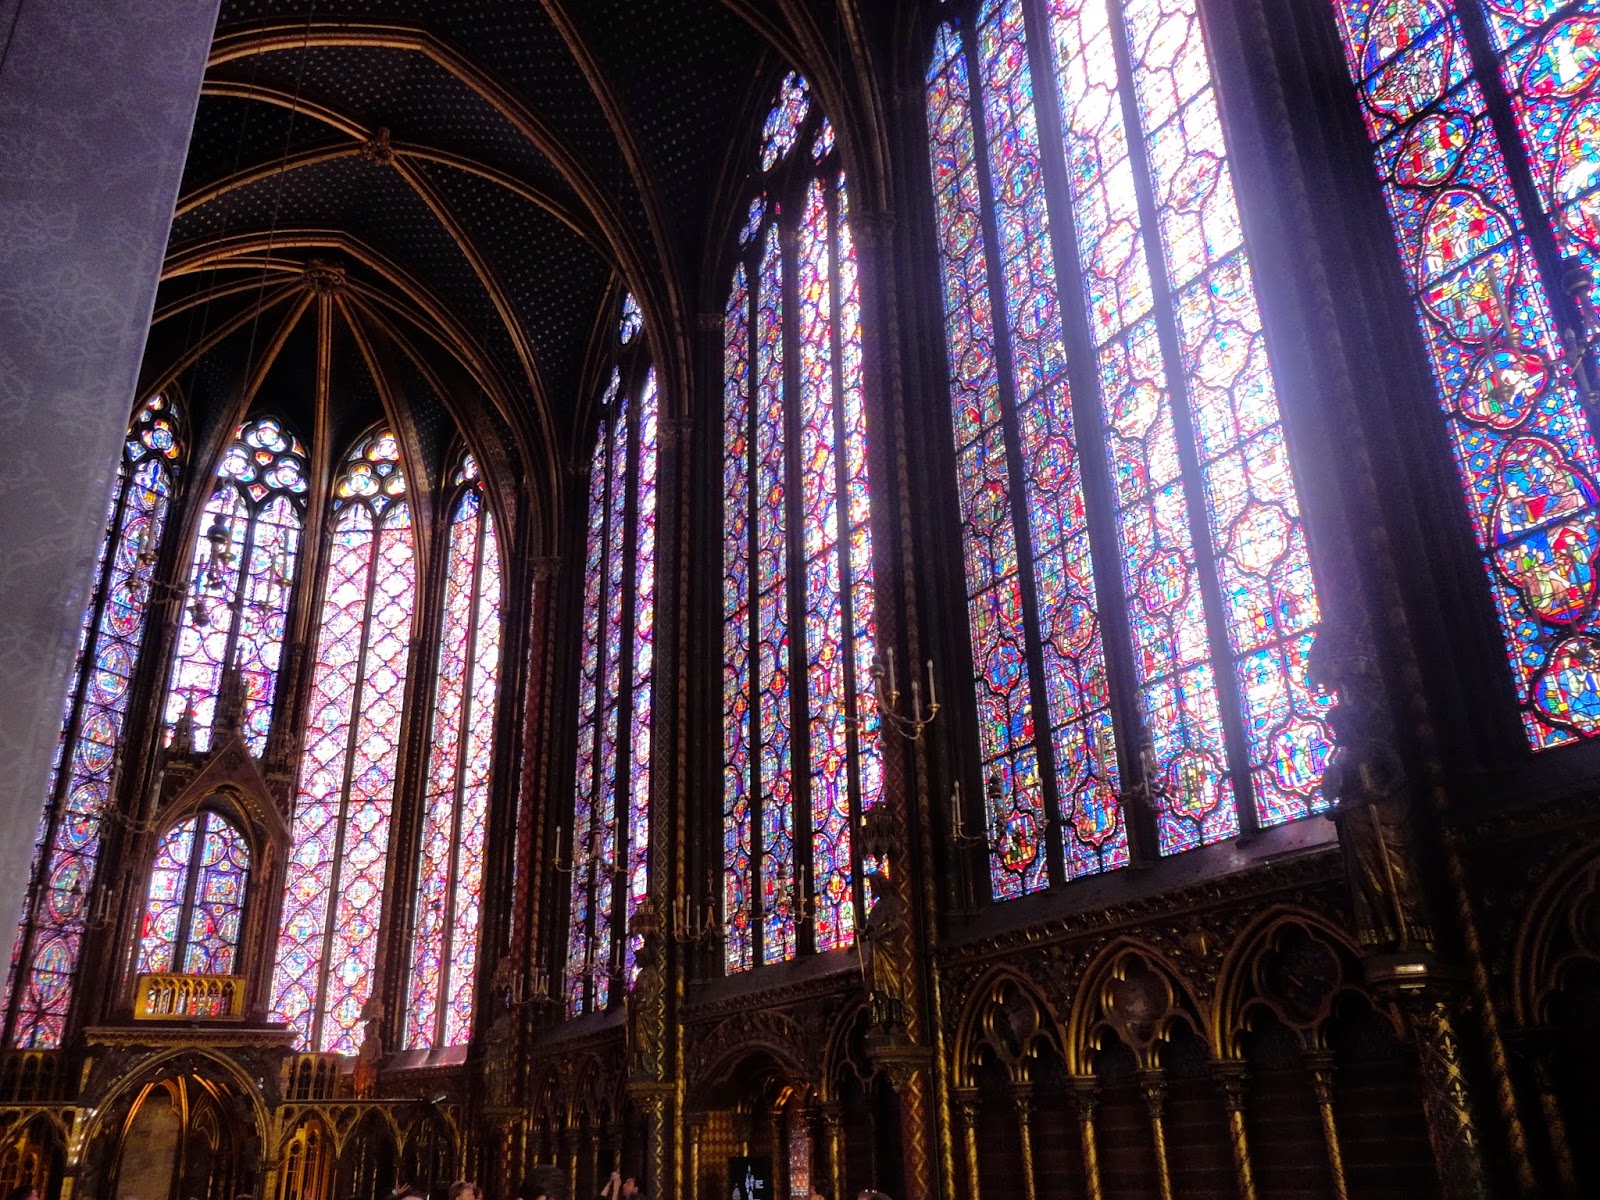 Interior of Sainte-Chapelle, Paris